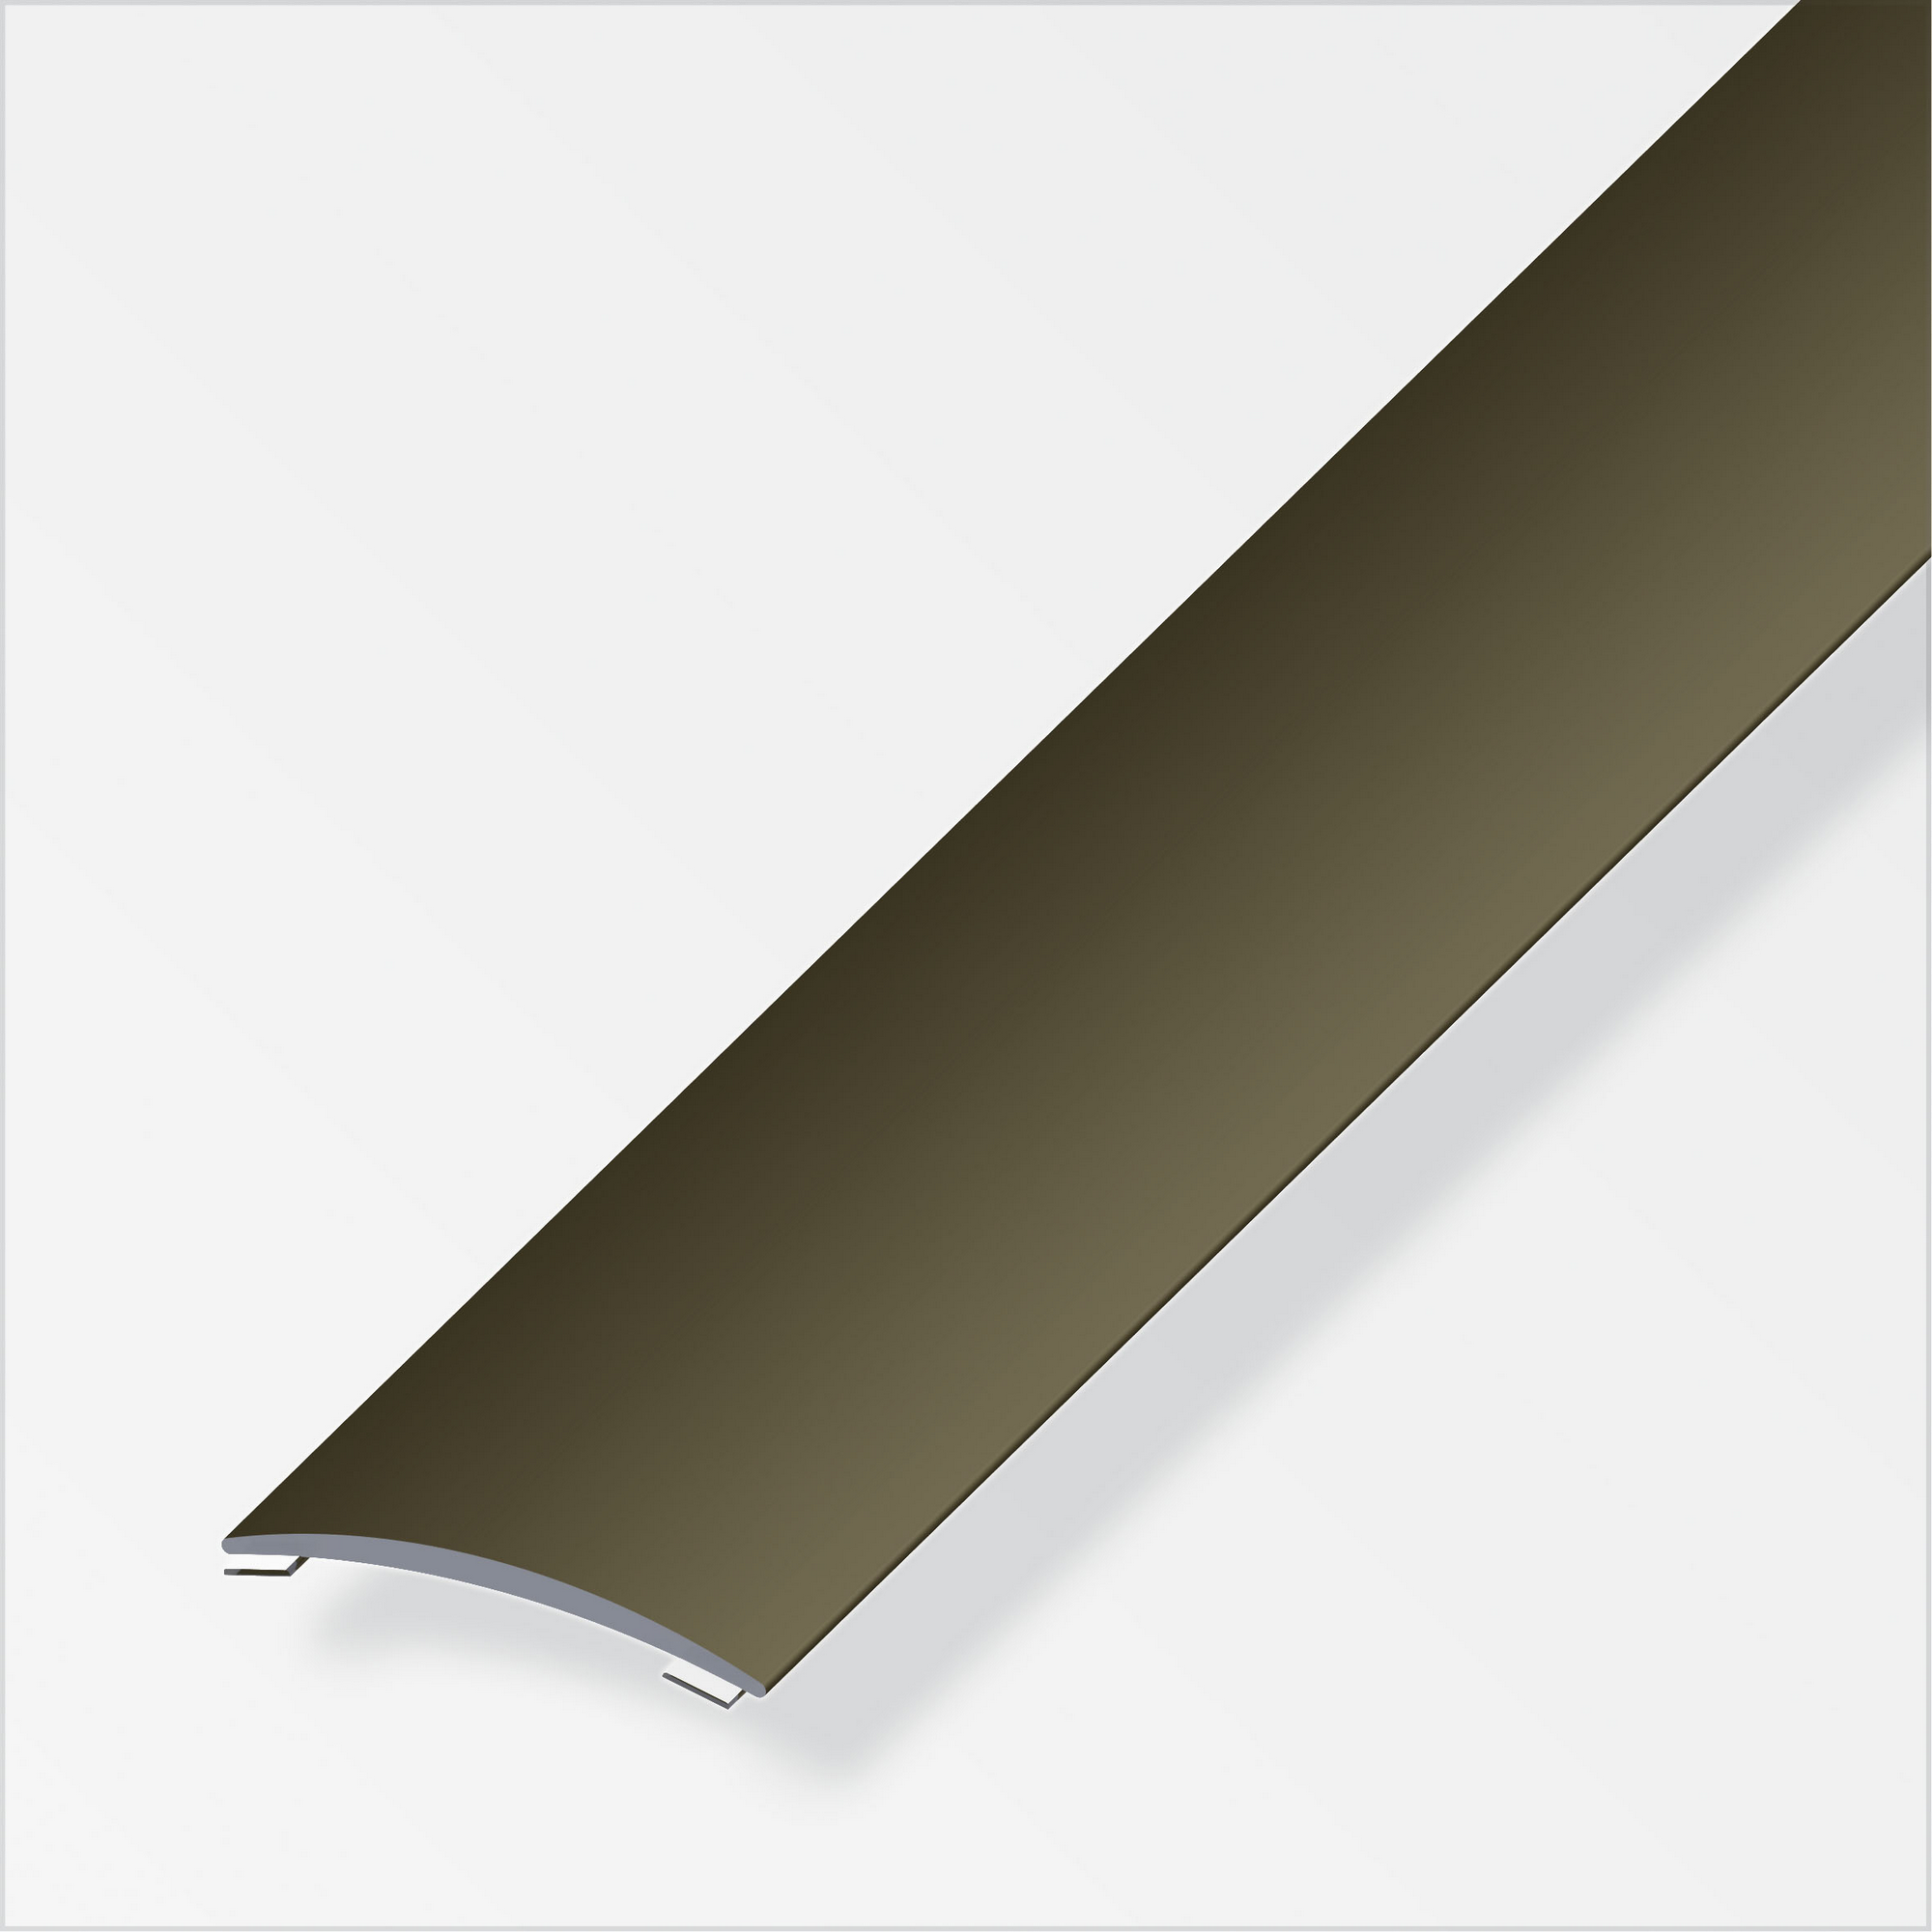 Übergangsprofil Aluminium bronzefarben 1000 x 20 mm + product picture